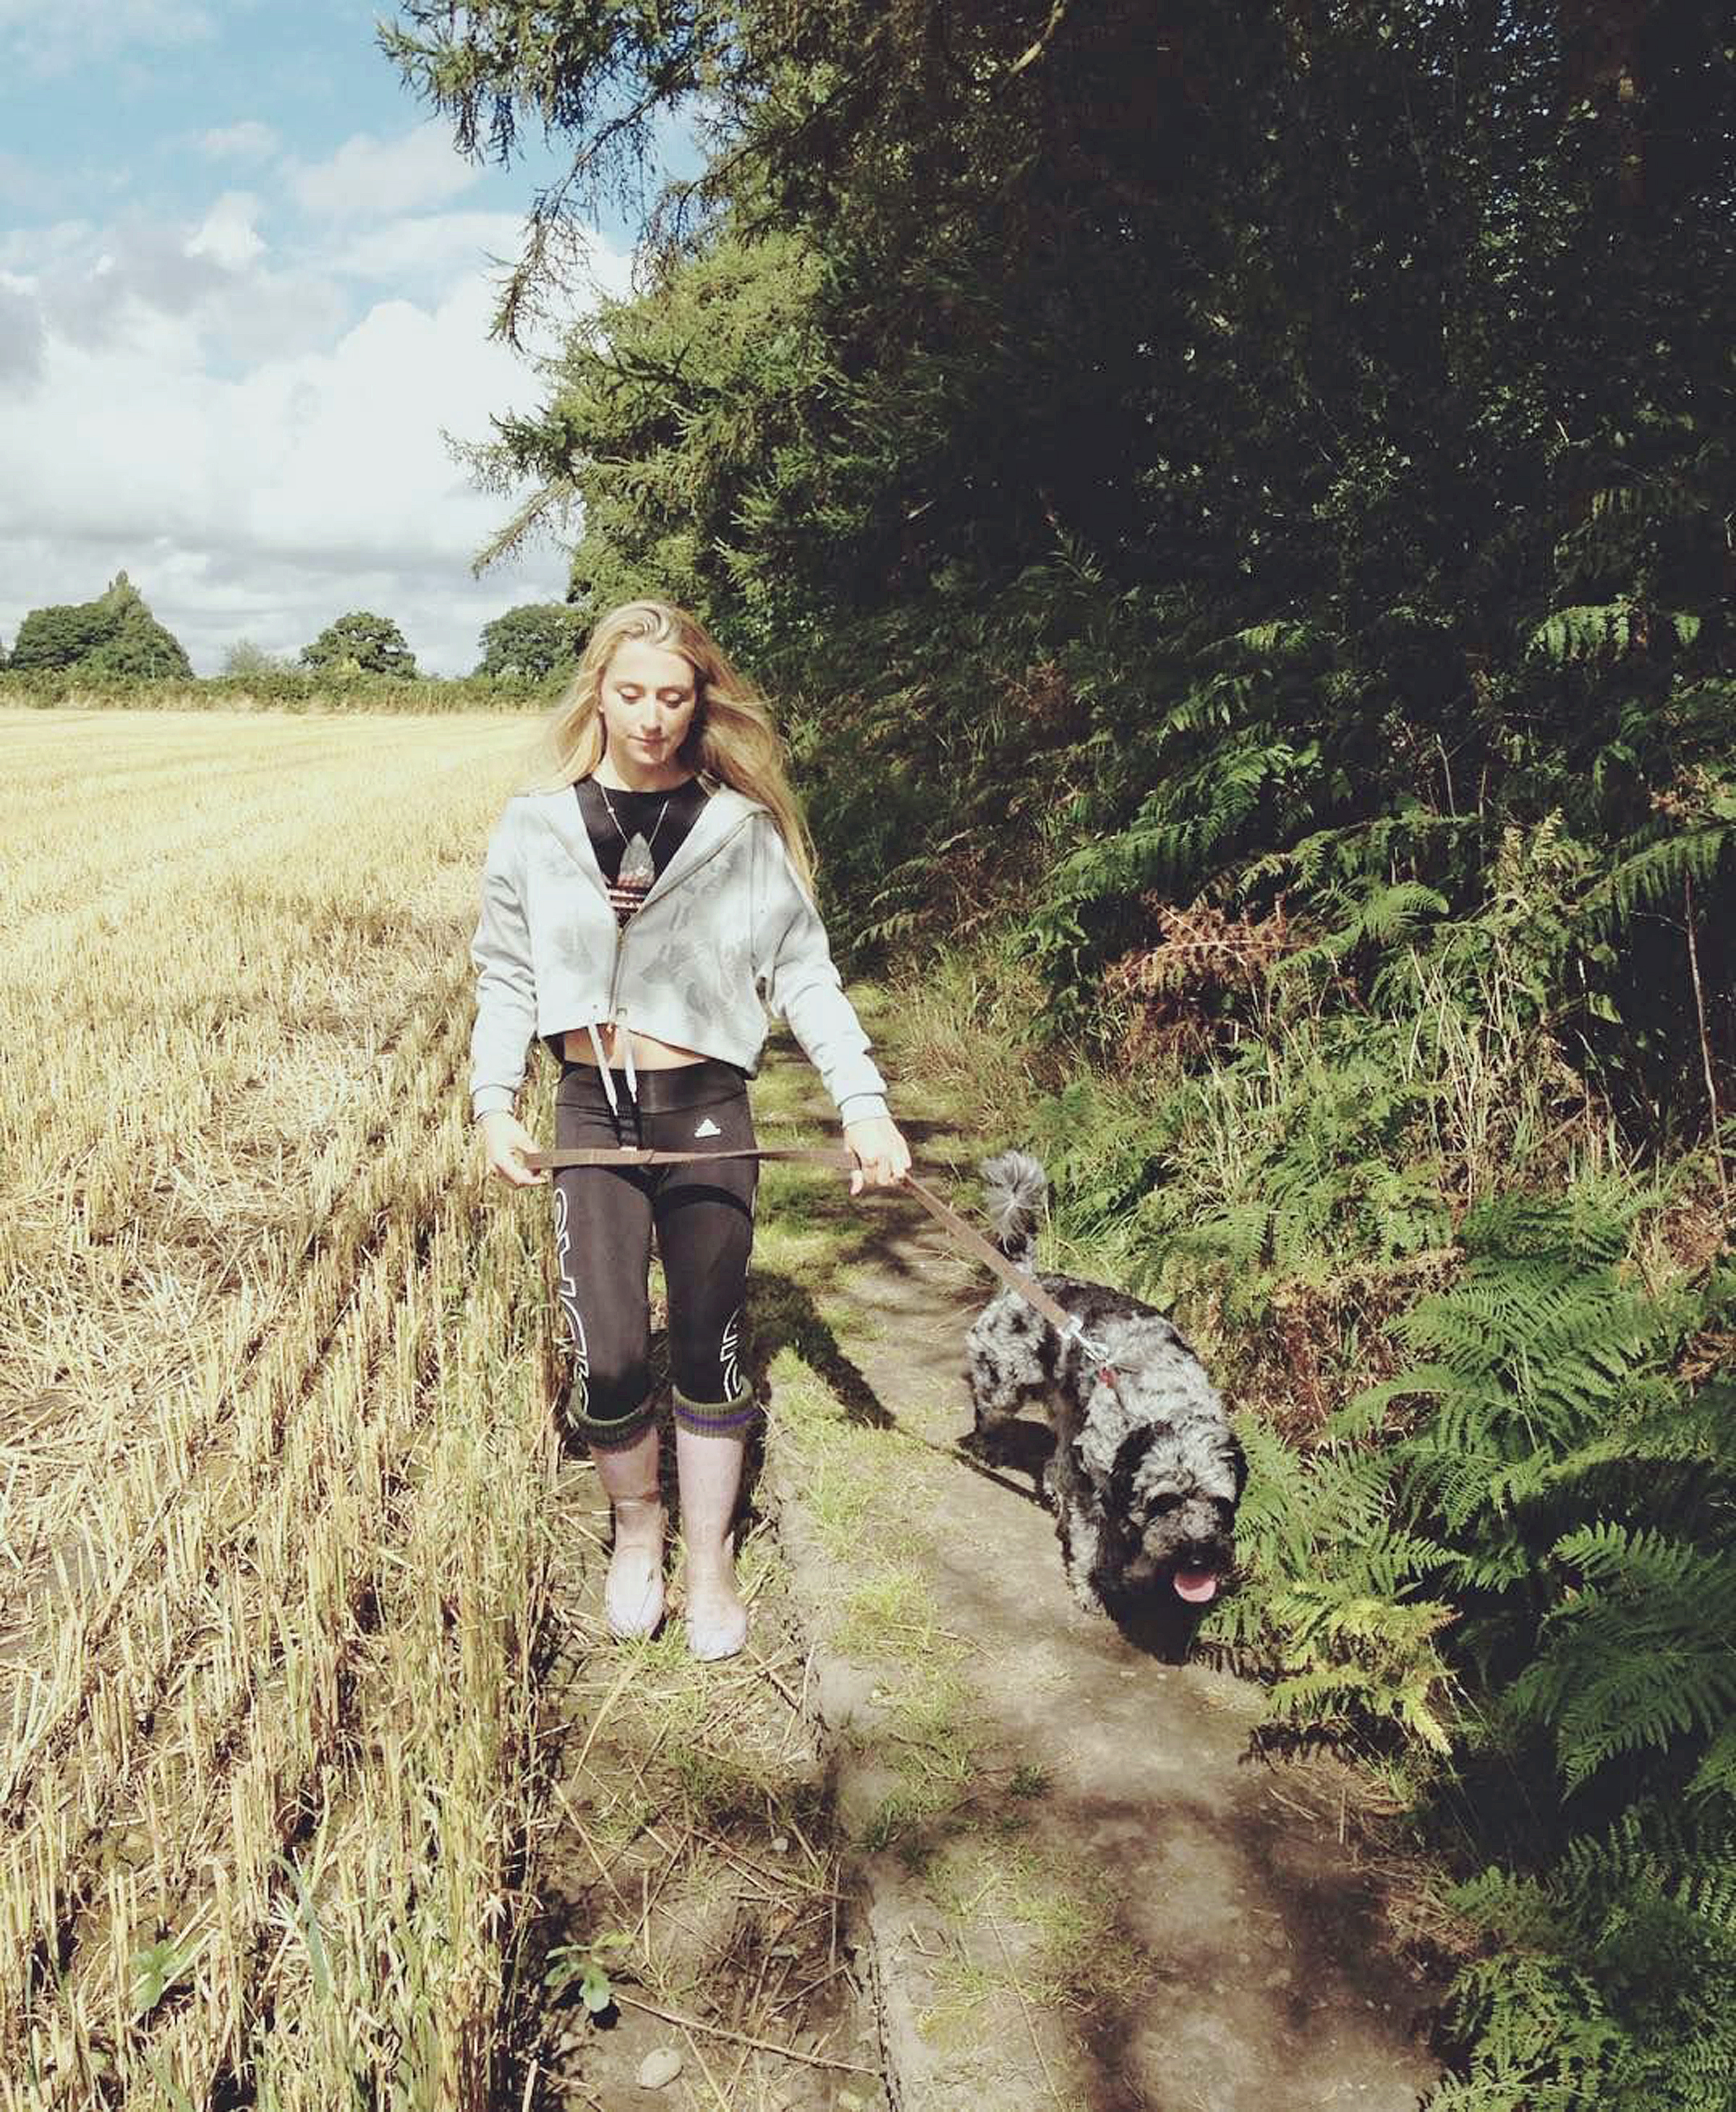 لورا کنی در حال پیاده روی یکی از سگ هایش